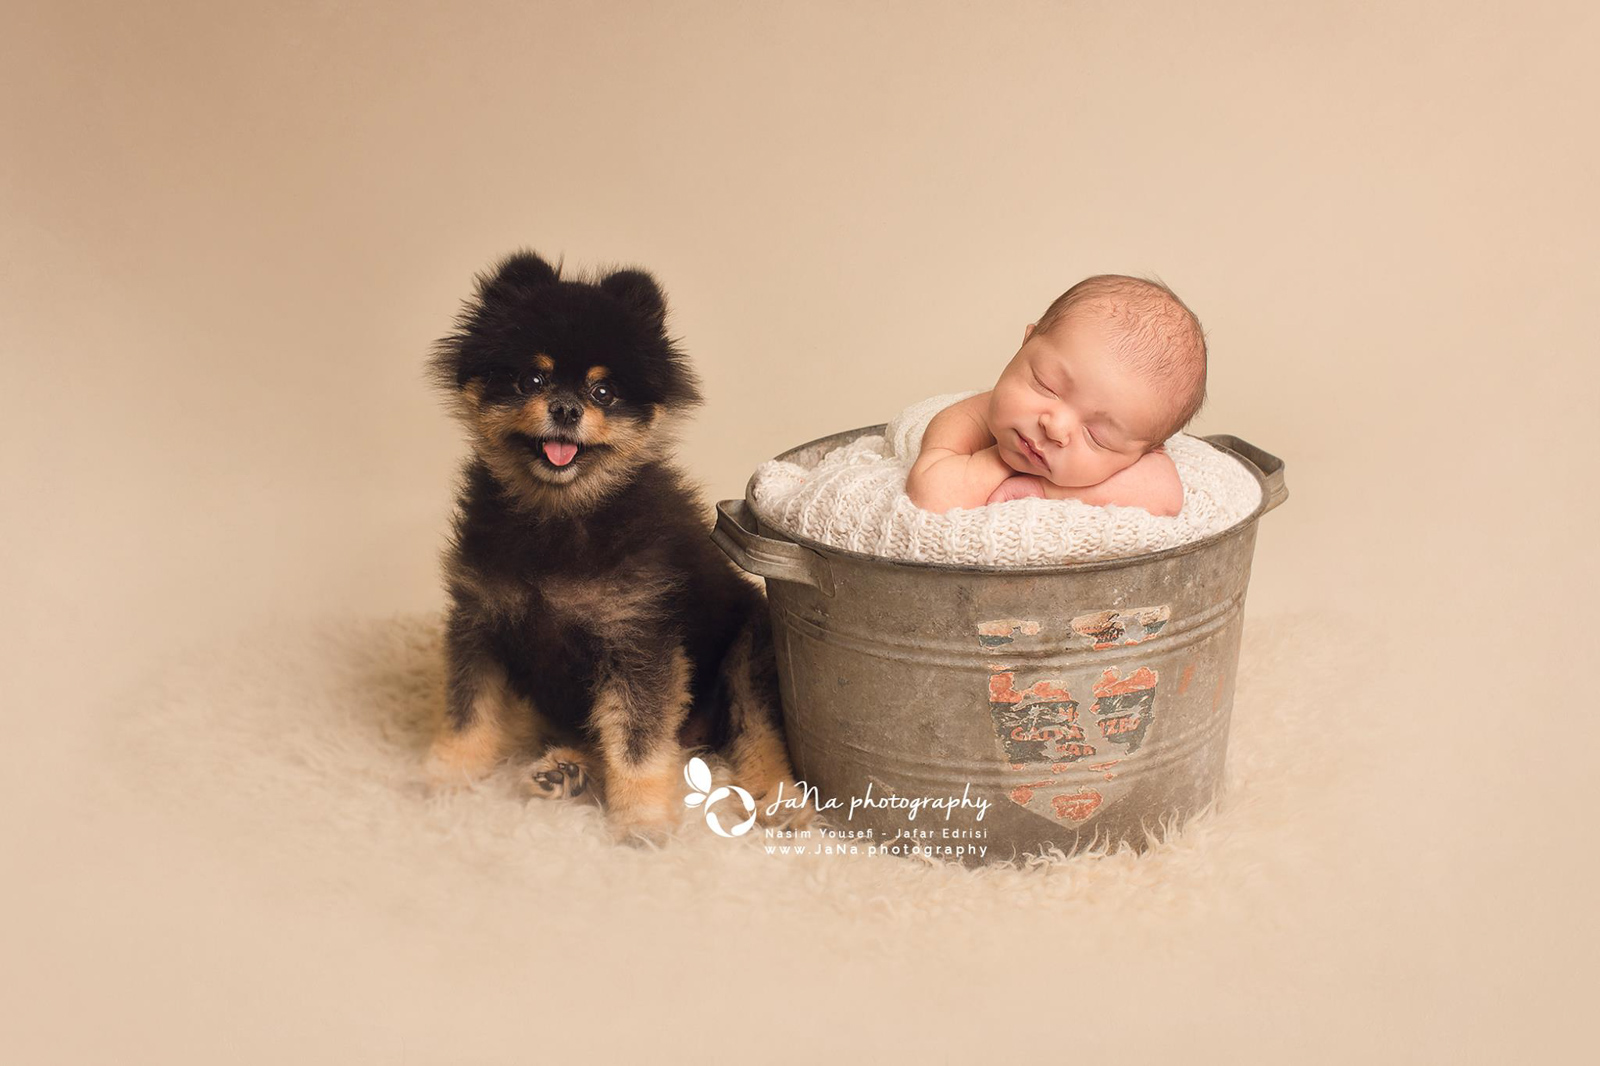 newborn baby boy and a black dog